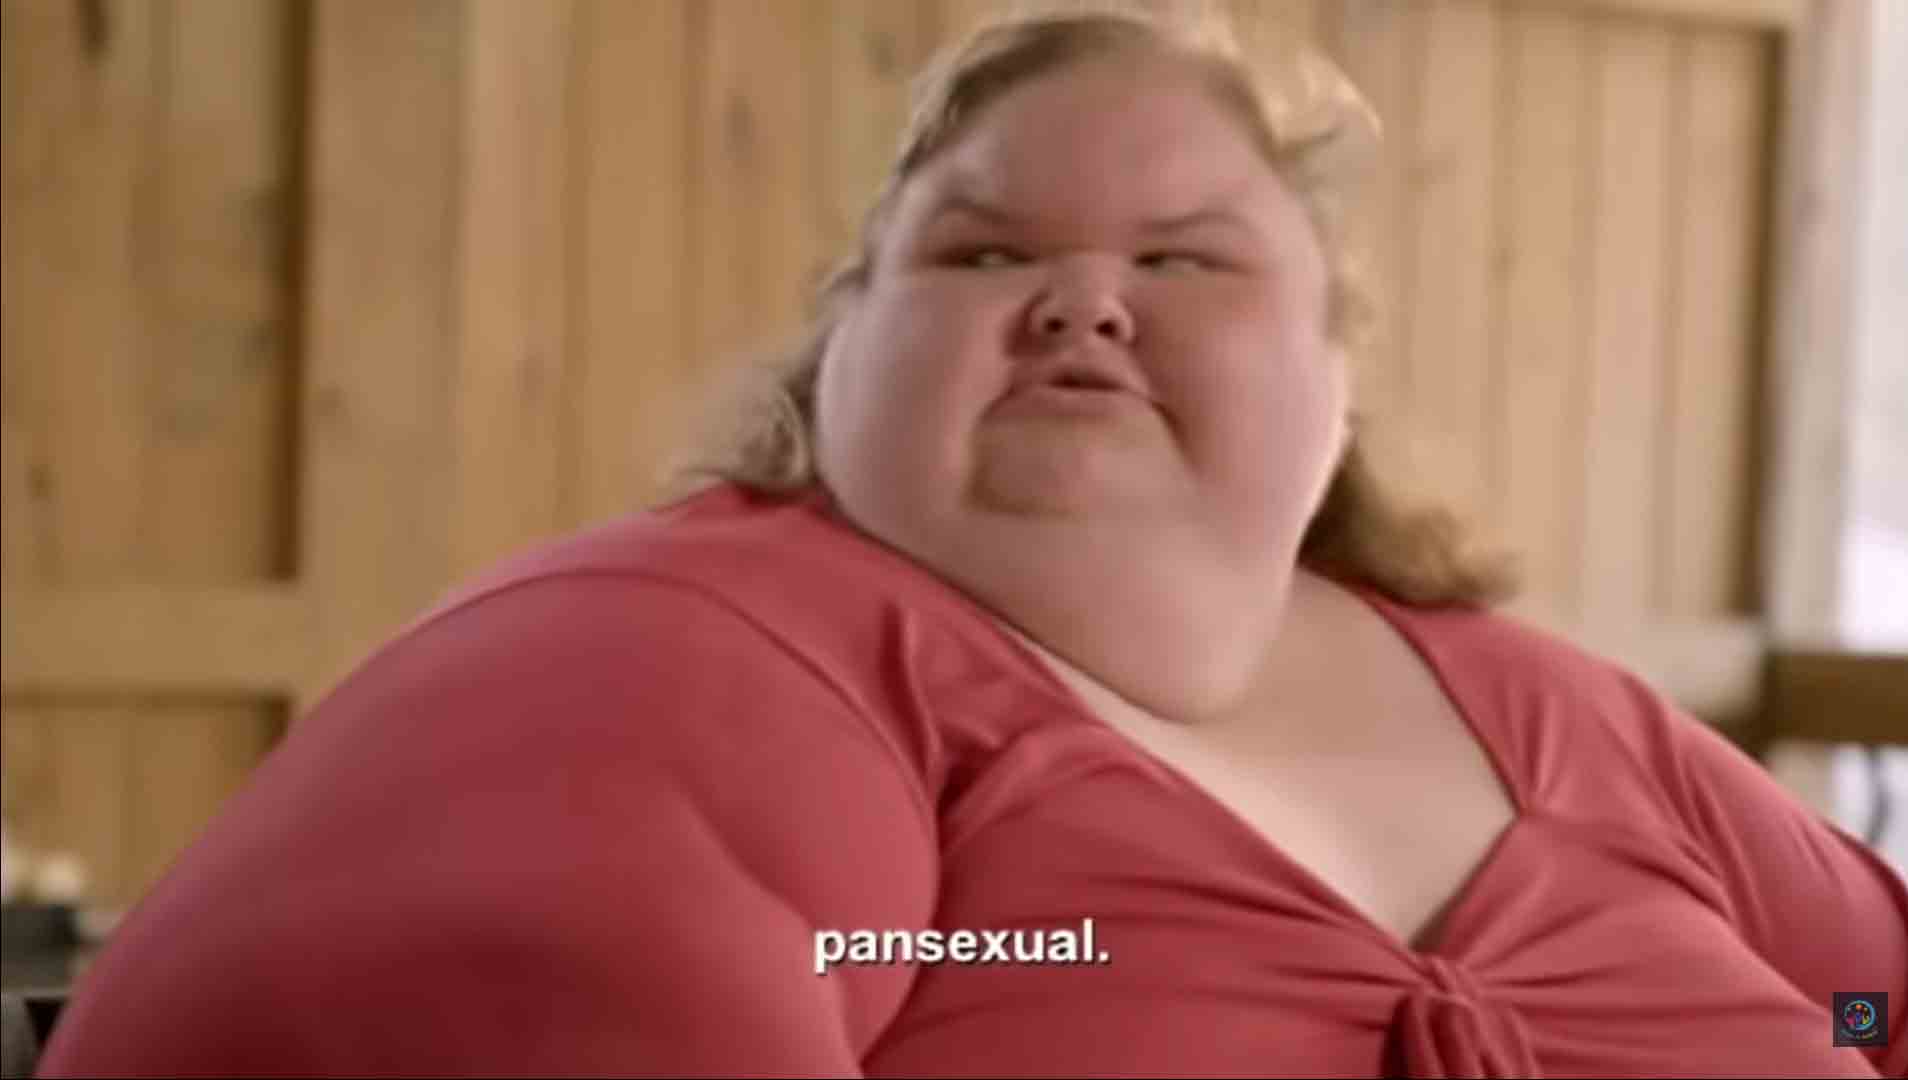 Estrela de reality show sobre perda de peso, revela ser pansexual para o namorado. Foto: reprodução Youtube